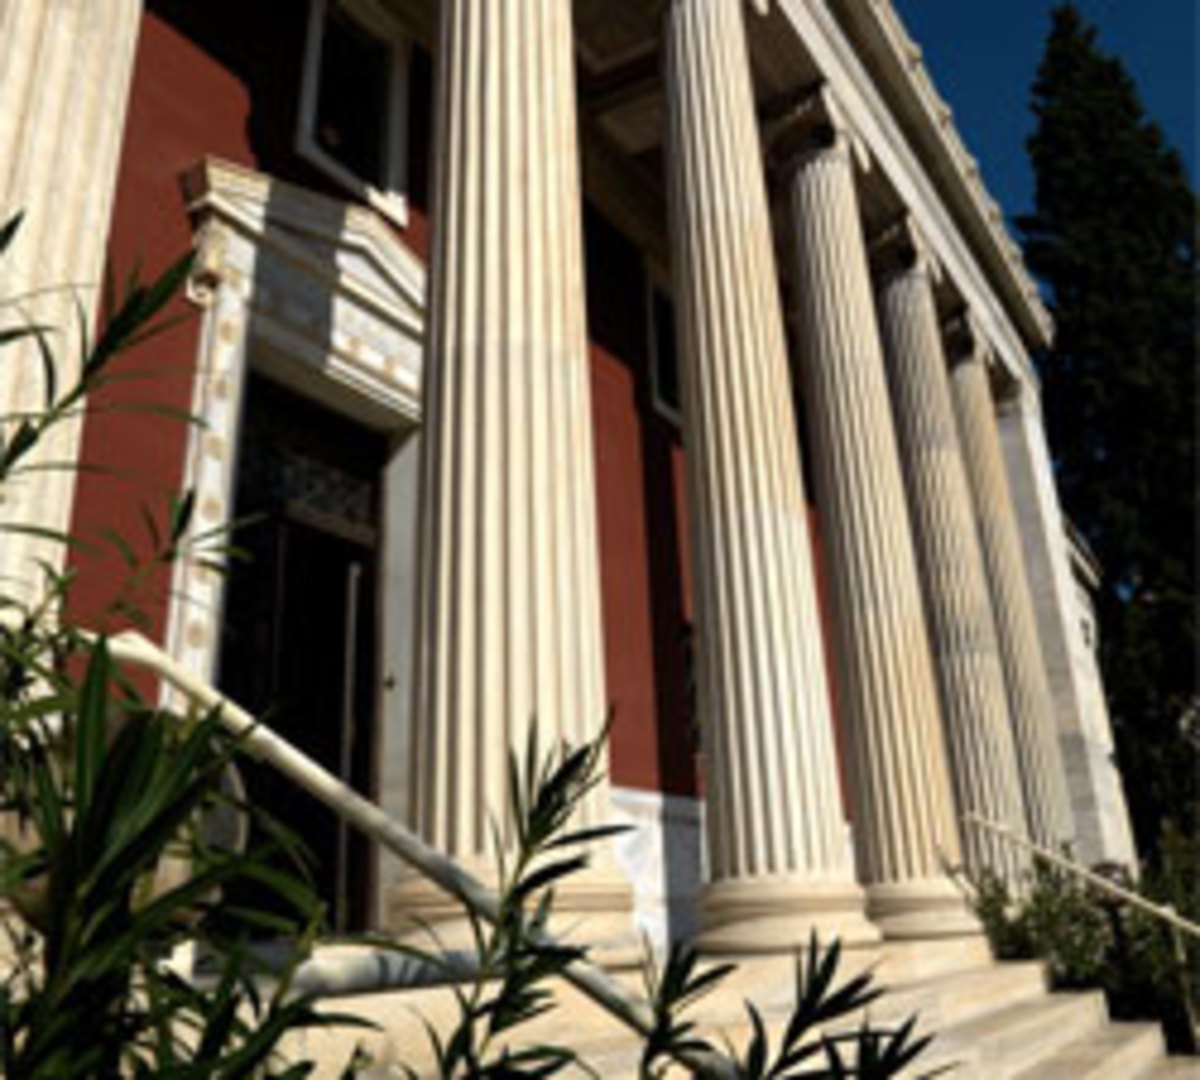 65 Έλληνες εικαστικοί στη Γεννάδειο Βιβλιοθήκη